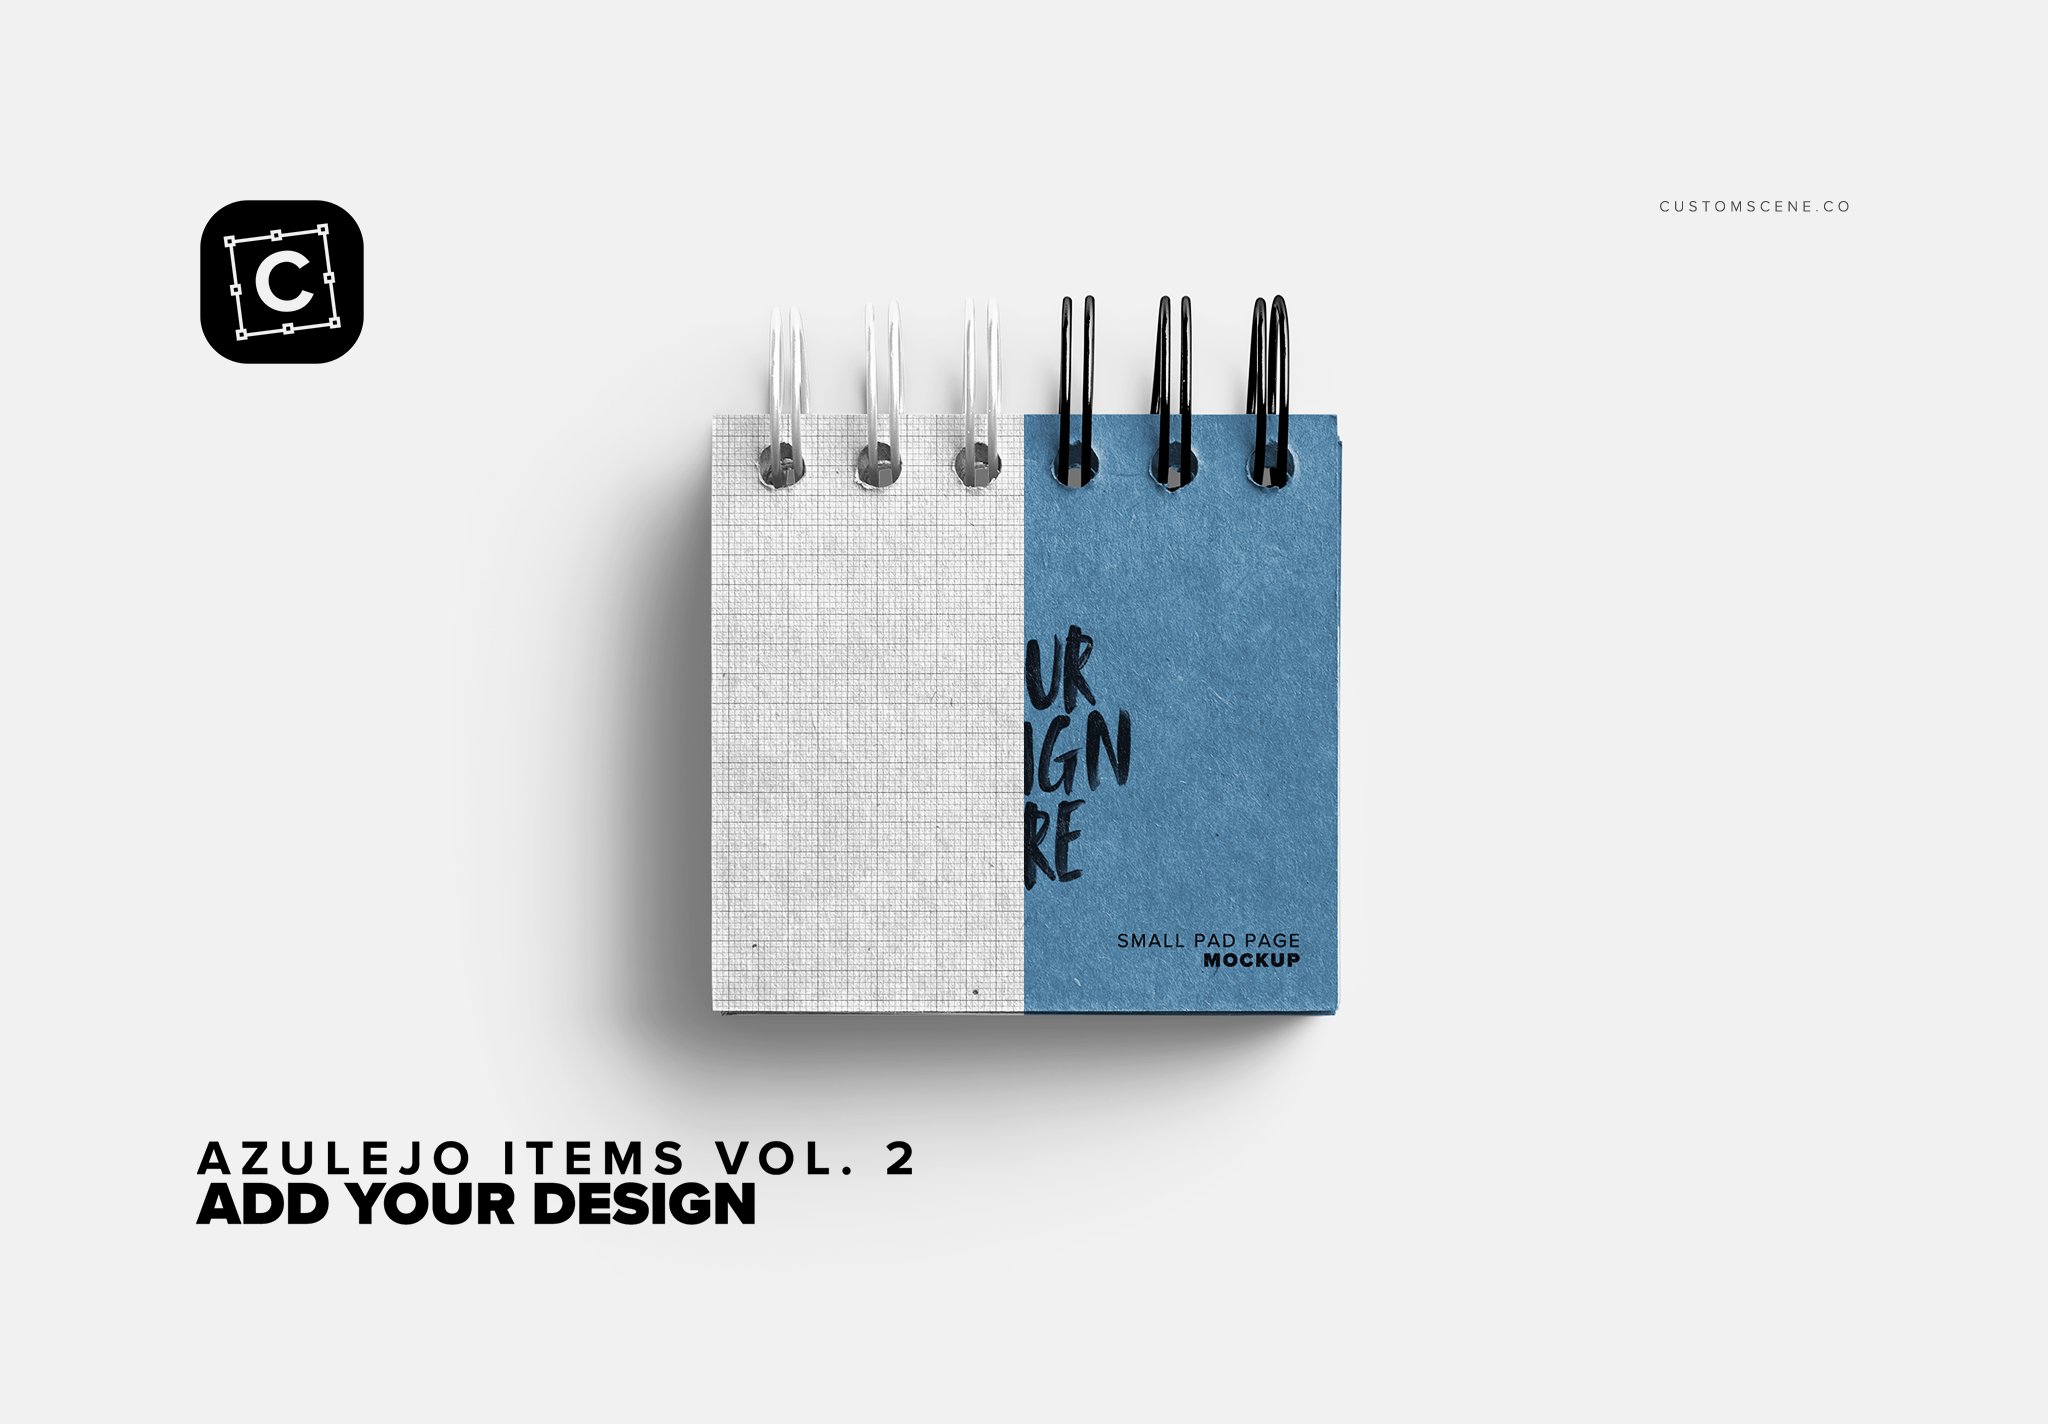 azulejo items vol 2 05 add your design 486